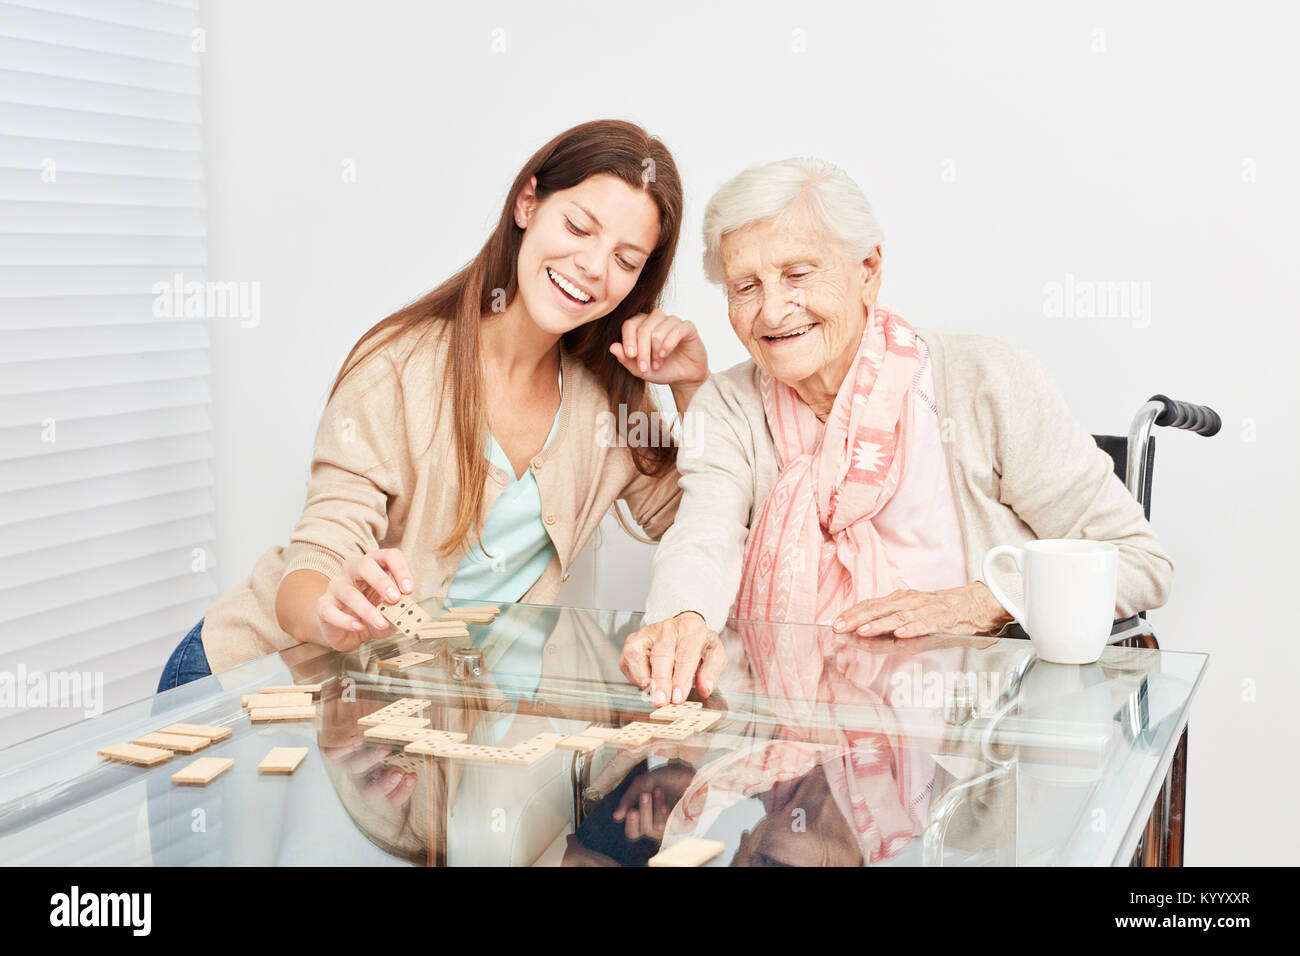 Senior spielt mit einem Krankenpflege Hilfe gemeinsam Domino im Ruhestand home Stockfoto